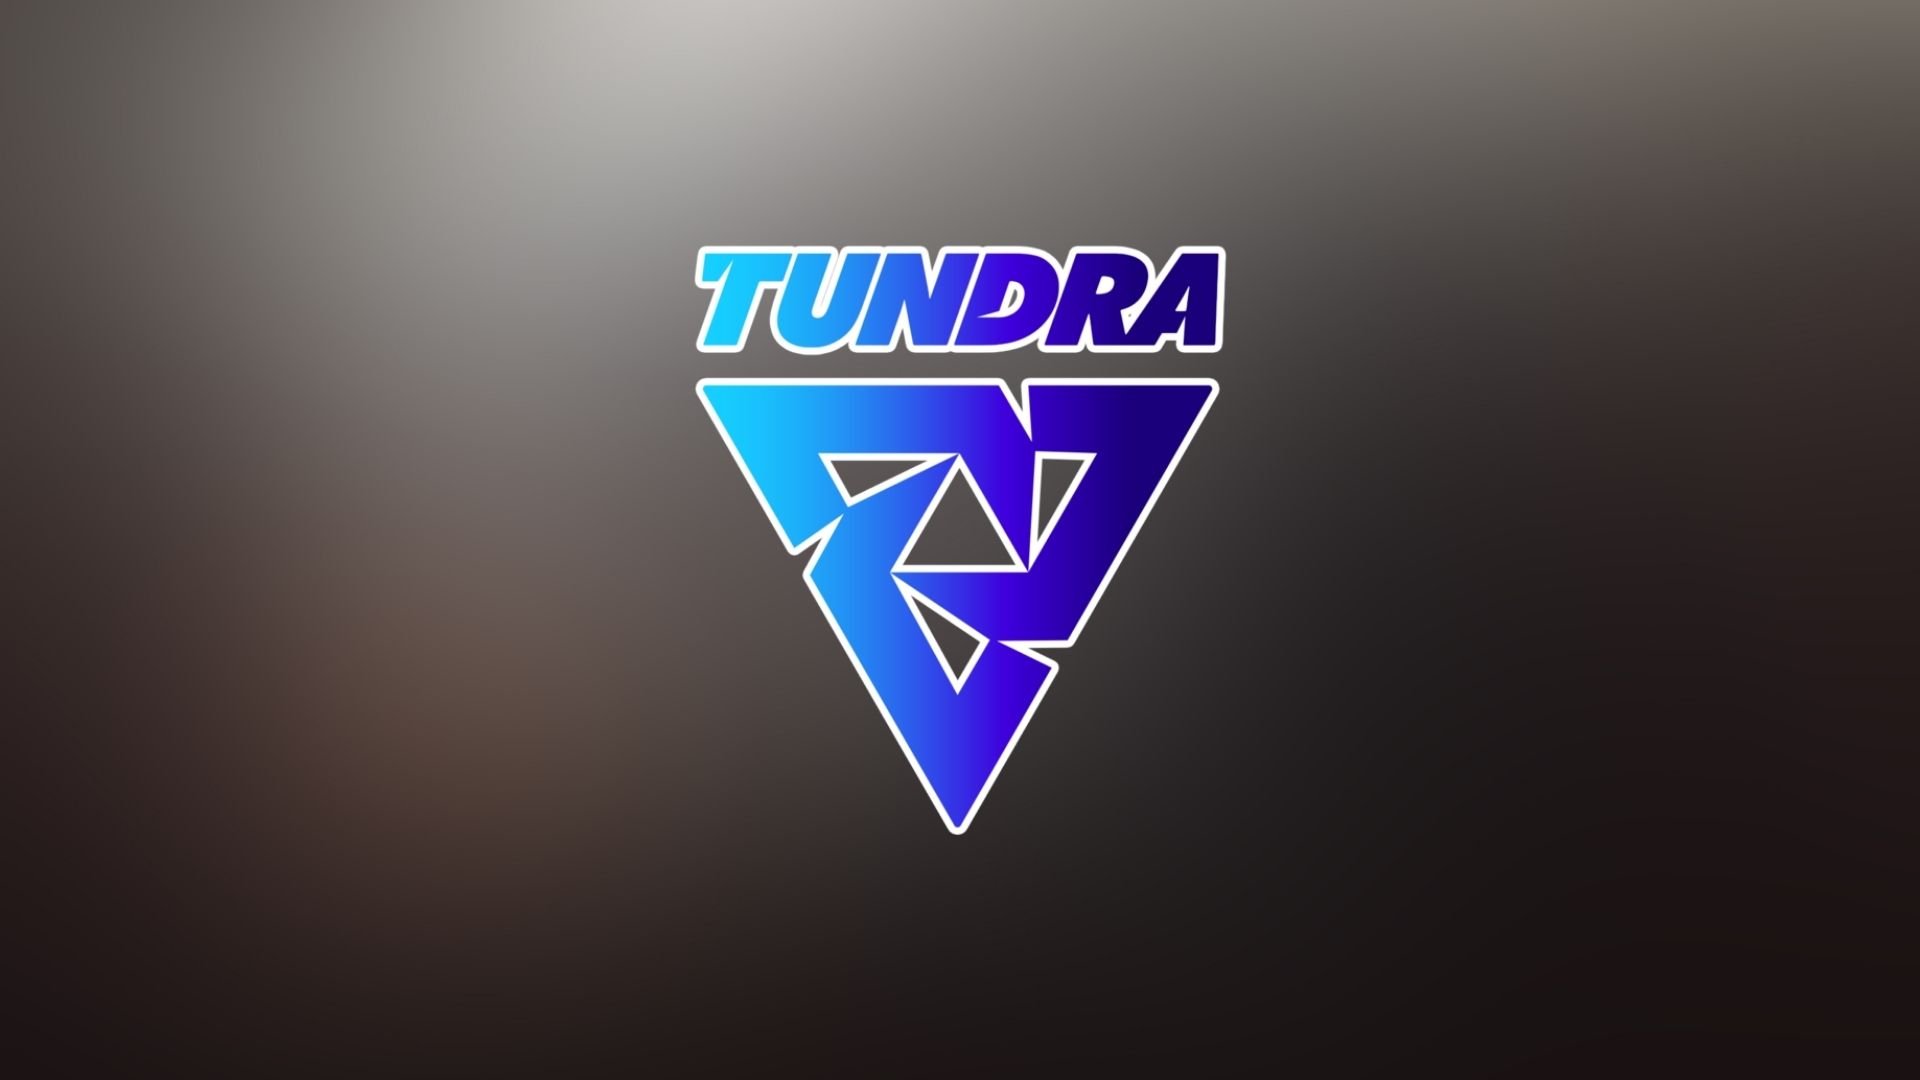 Tundra потроллила побеждённых противников на мейджоре — она изменила их логотипы